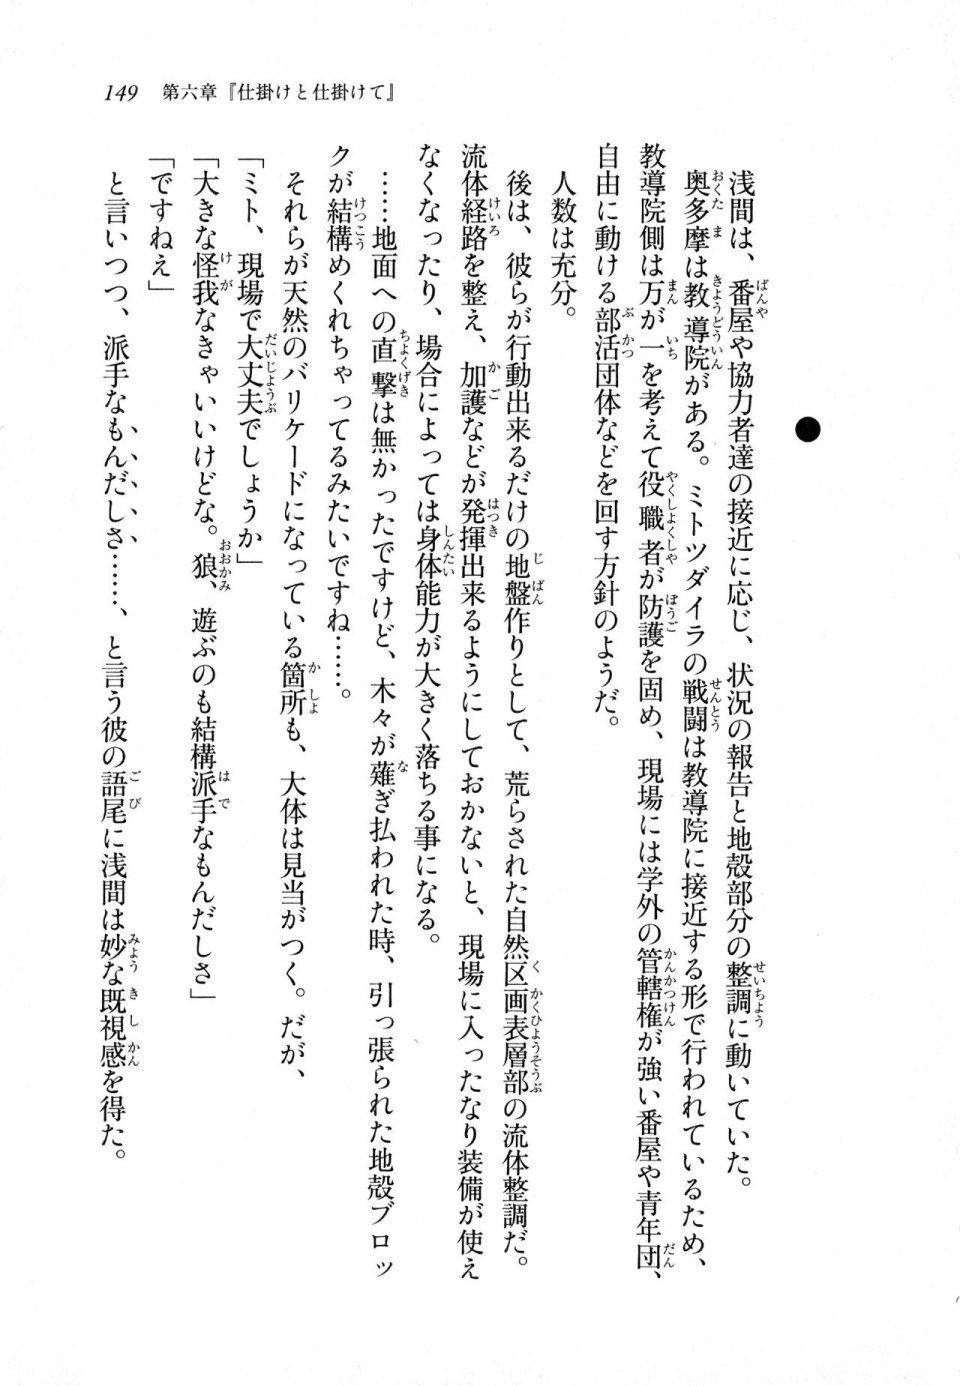 Kyoukai Senjou no Horizon LN Sidestory Vol 1 - Photo #147